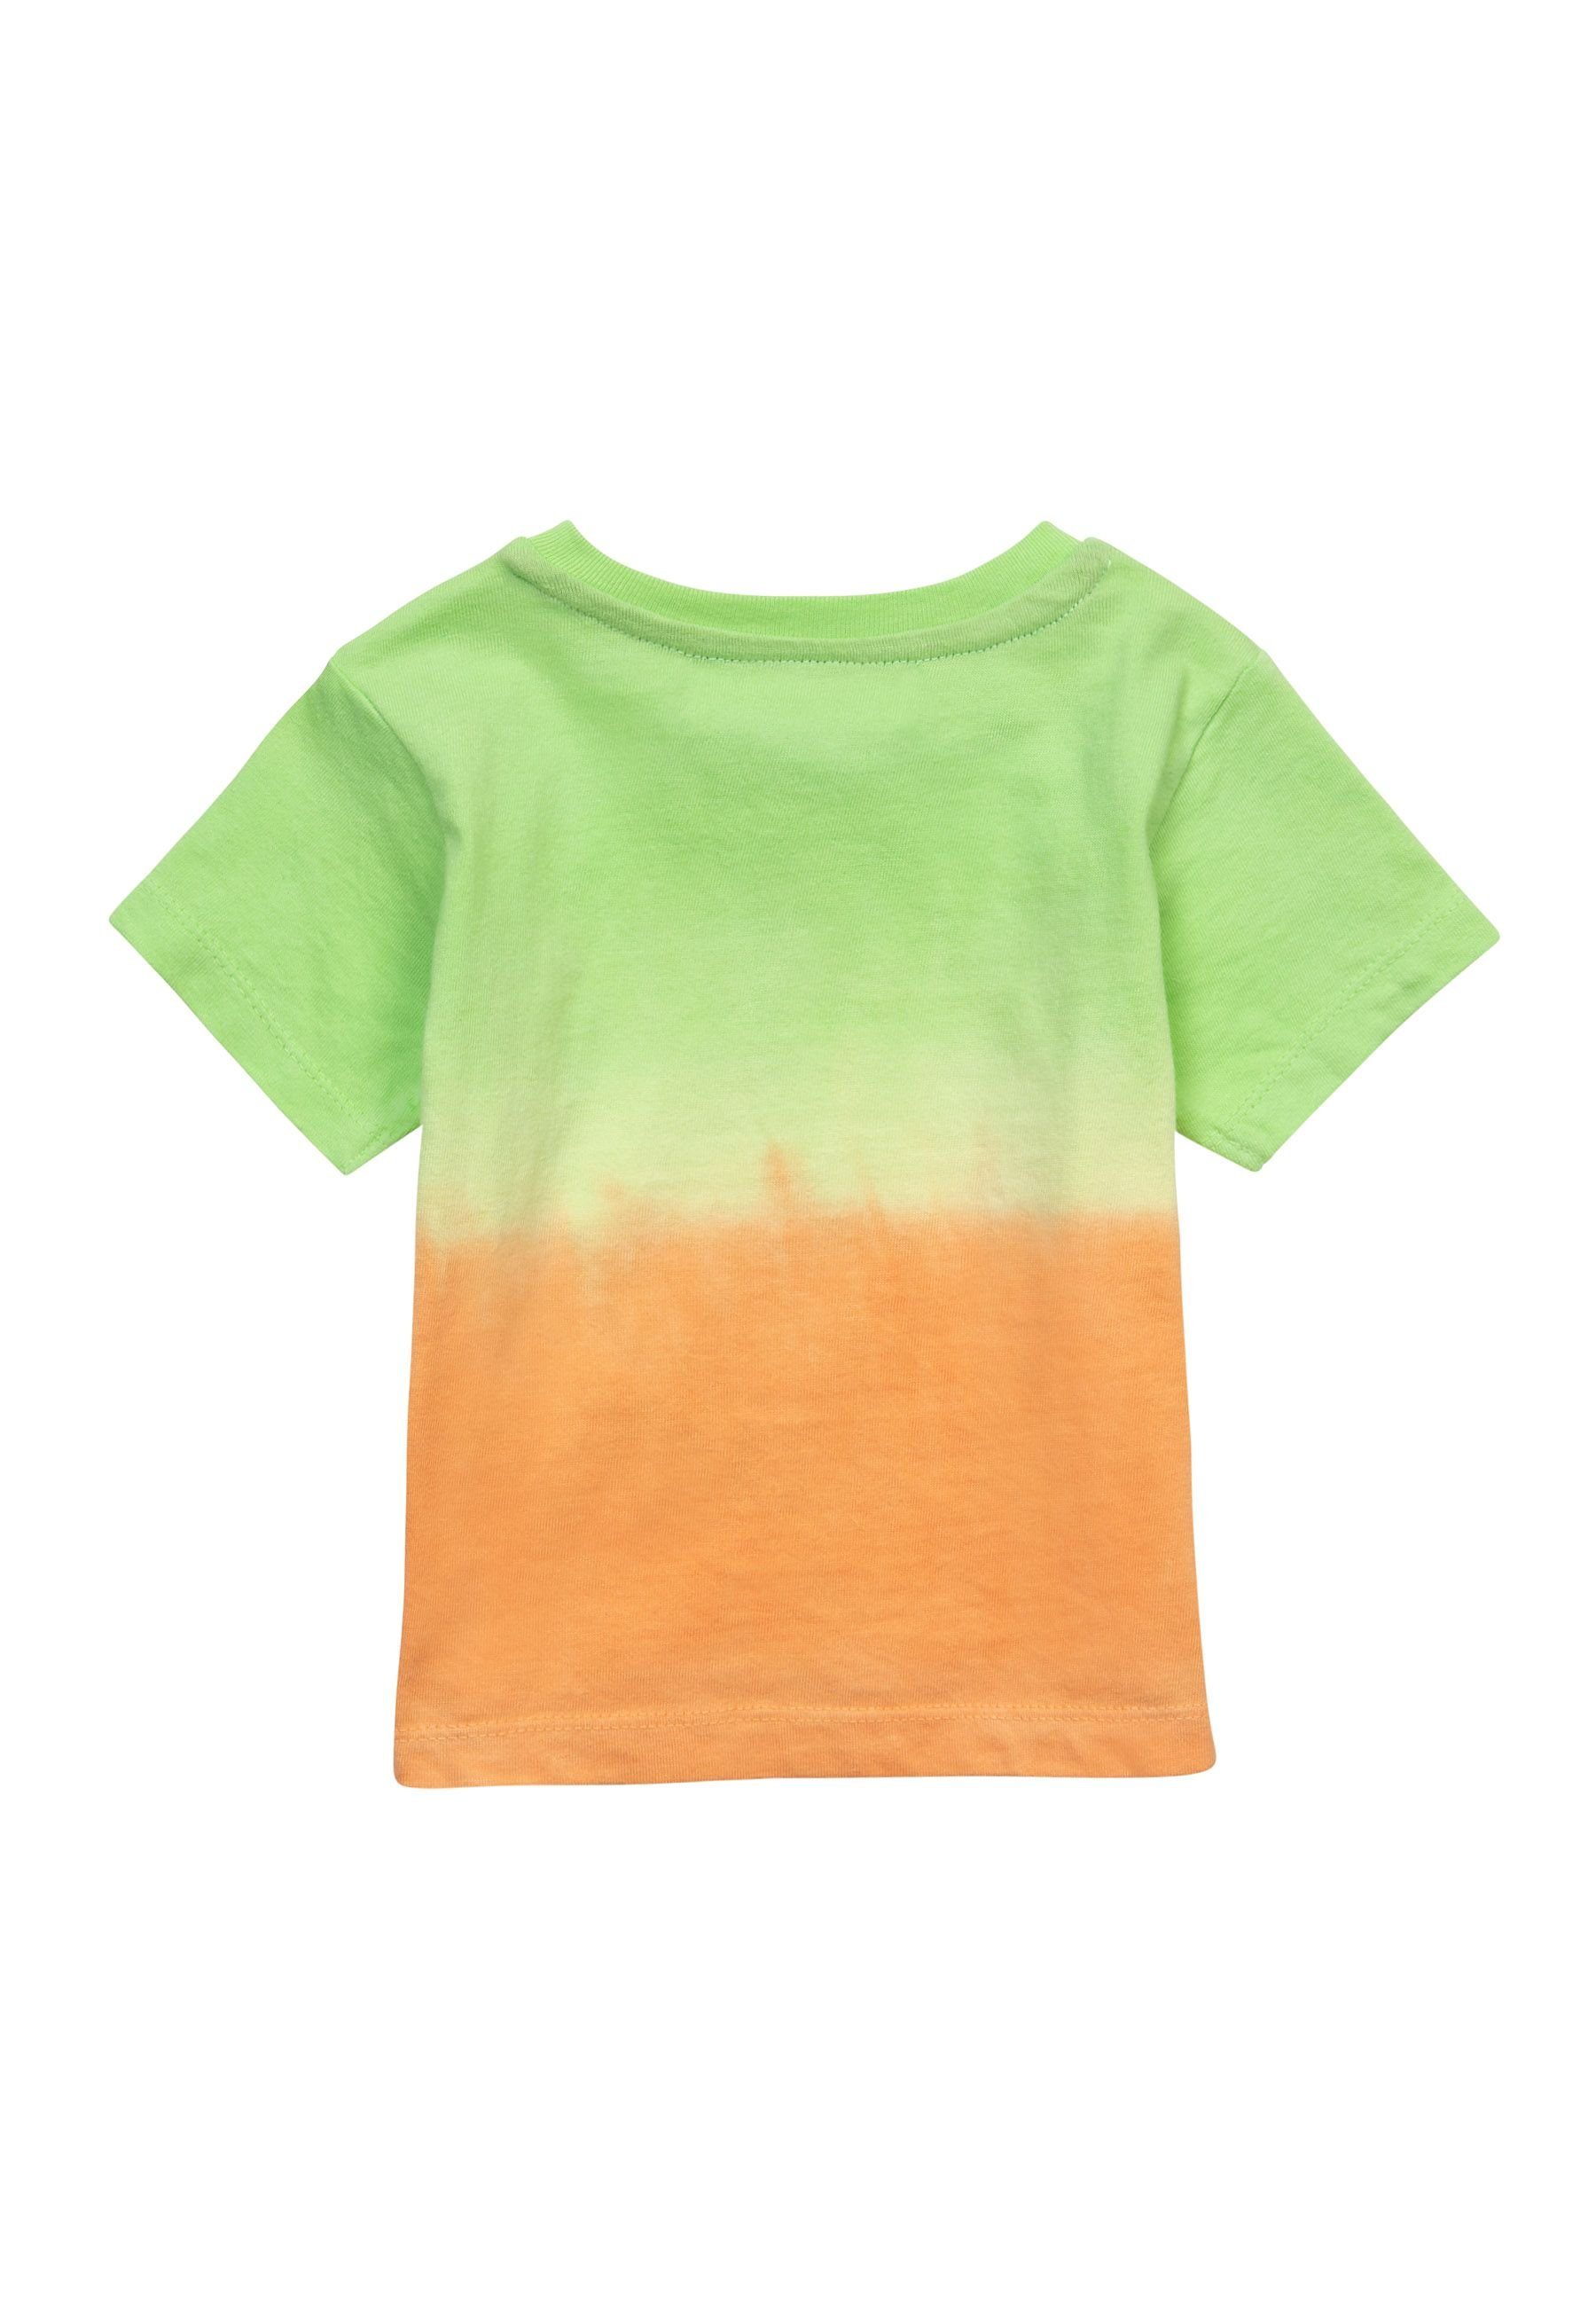 Ein (3m-3y) & Set Shorts T-Shirt und T-Shirt aus einem Neongrün Shorts MINOTI